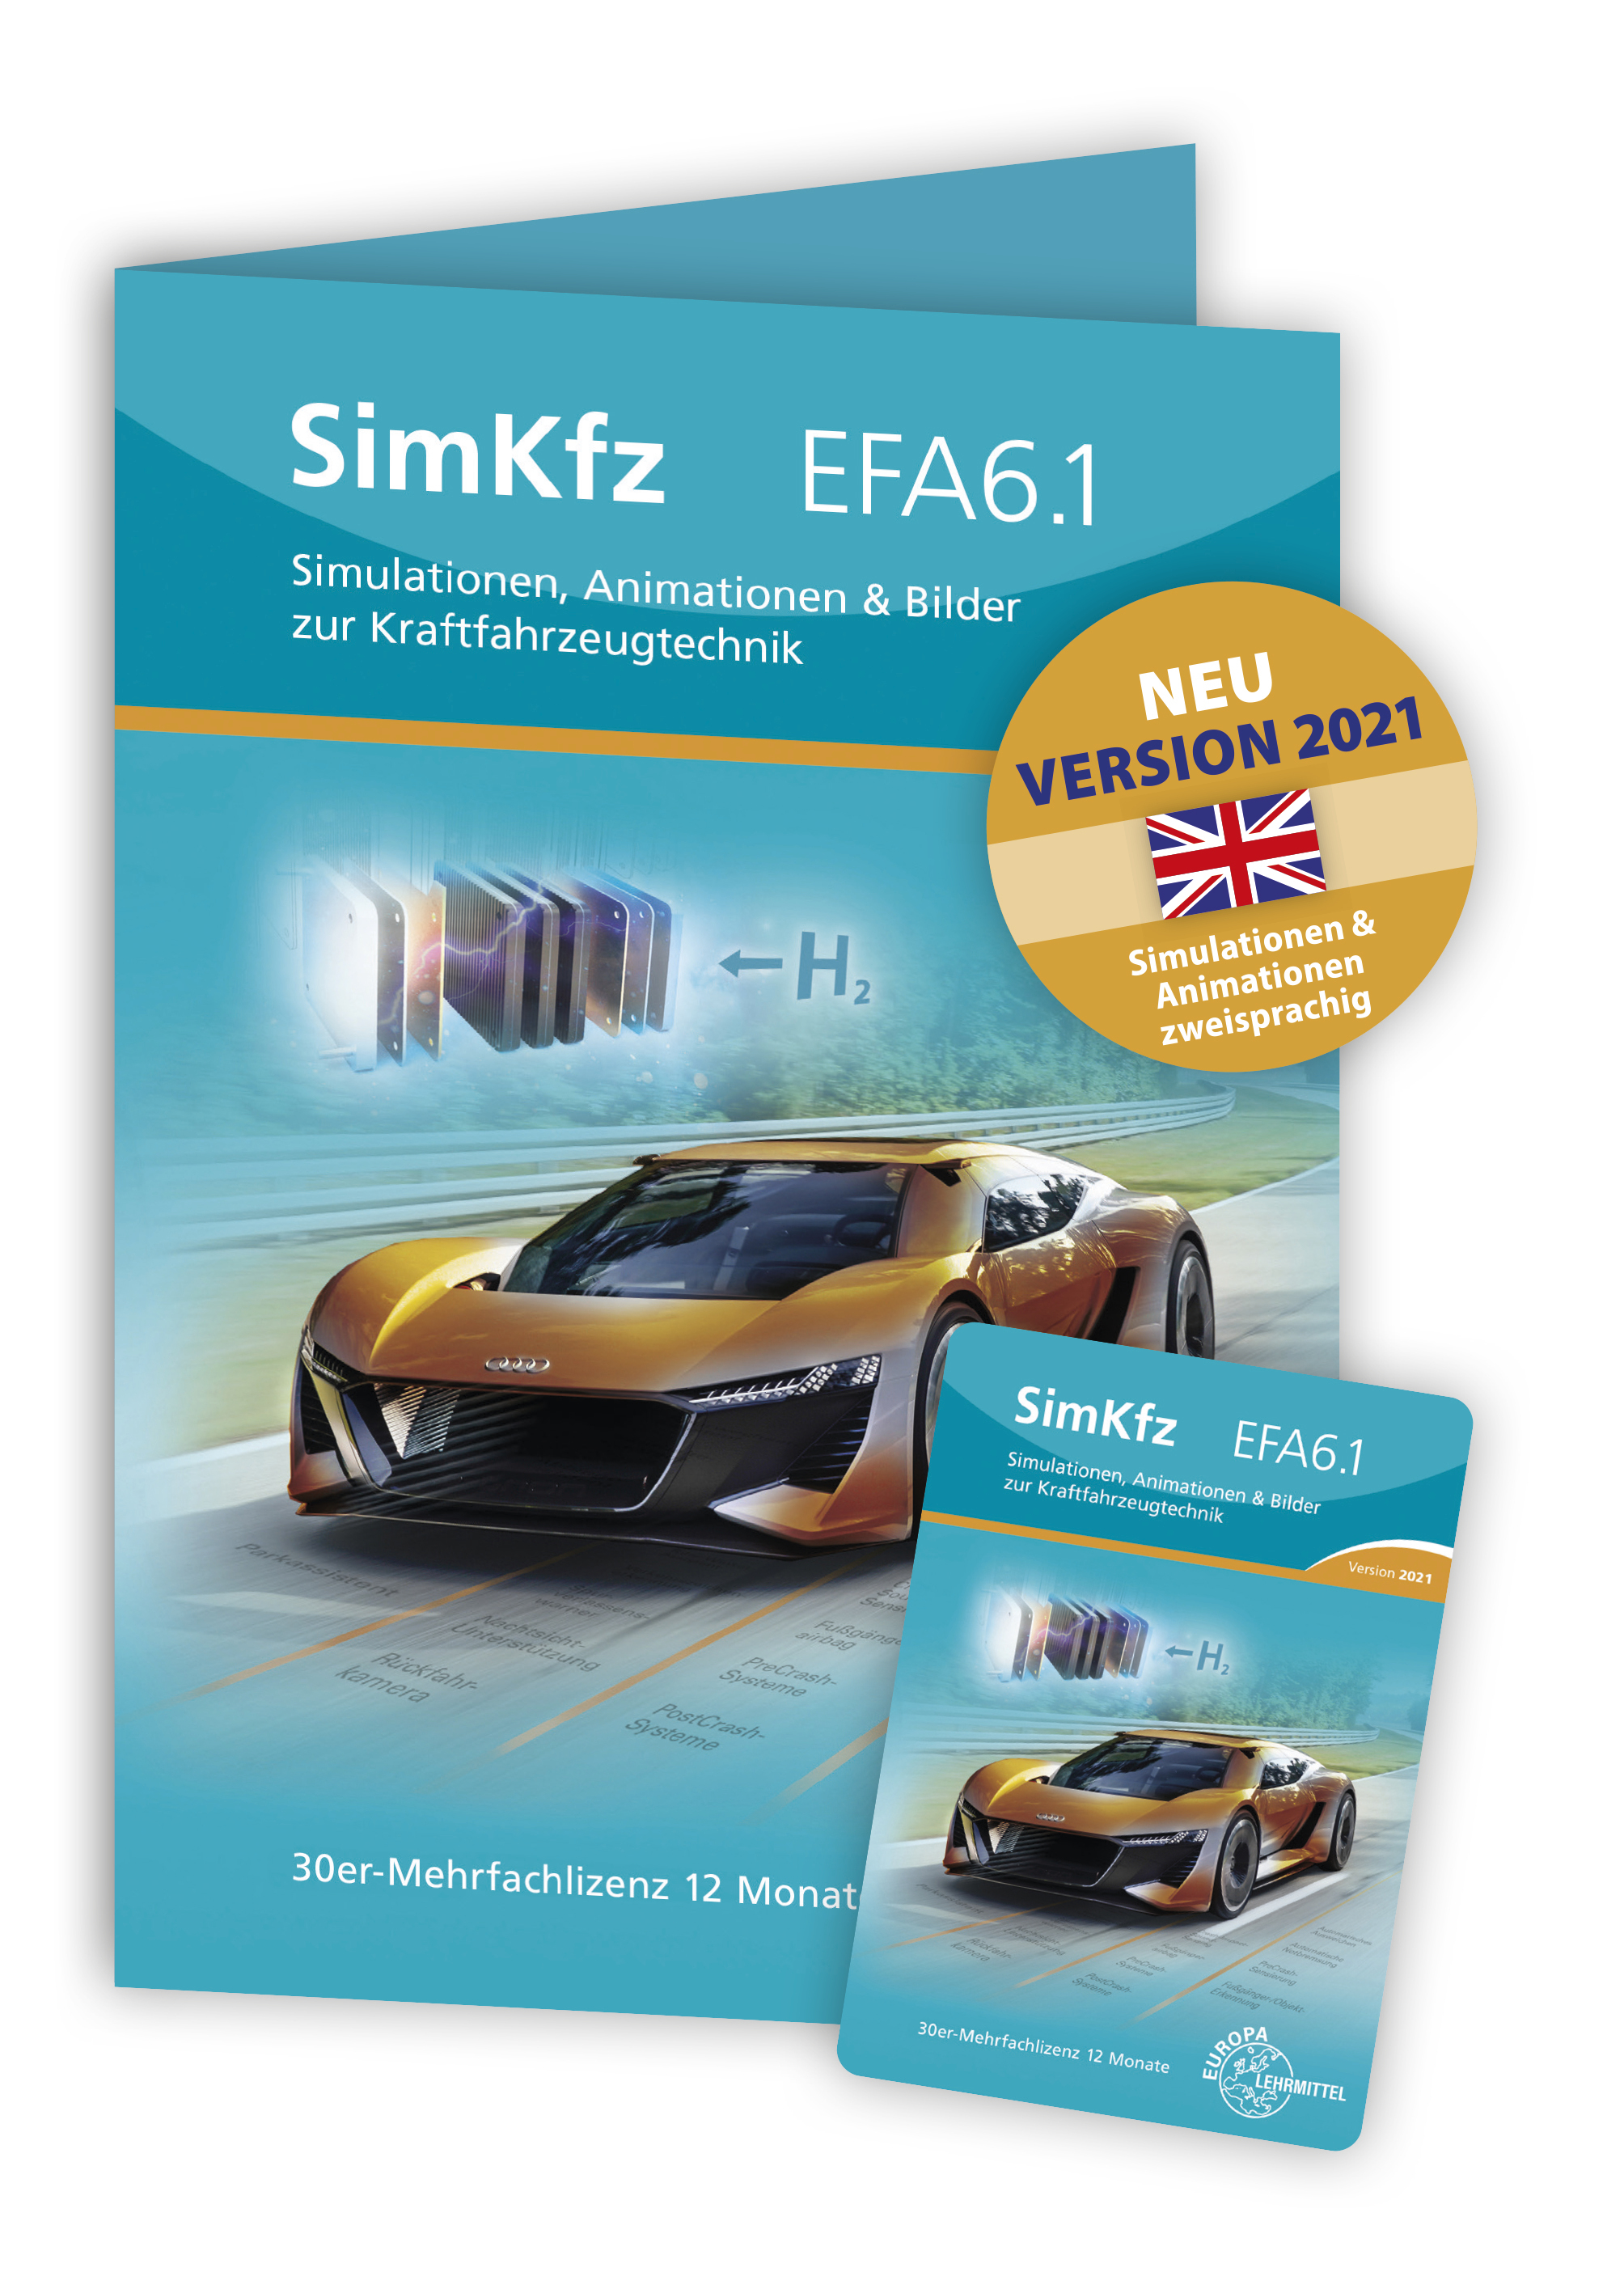 SimKfz EFA6.1 - Version 2021 - Freischaltcode auf Keycard - 30er Mehrfachlizenz